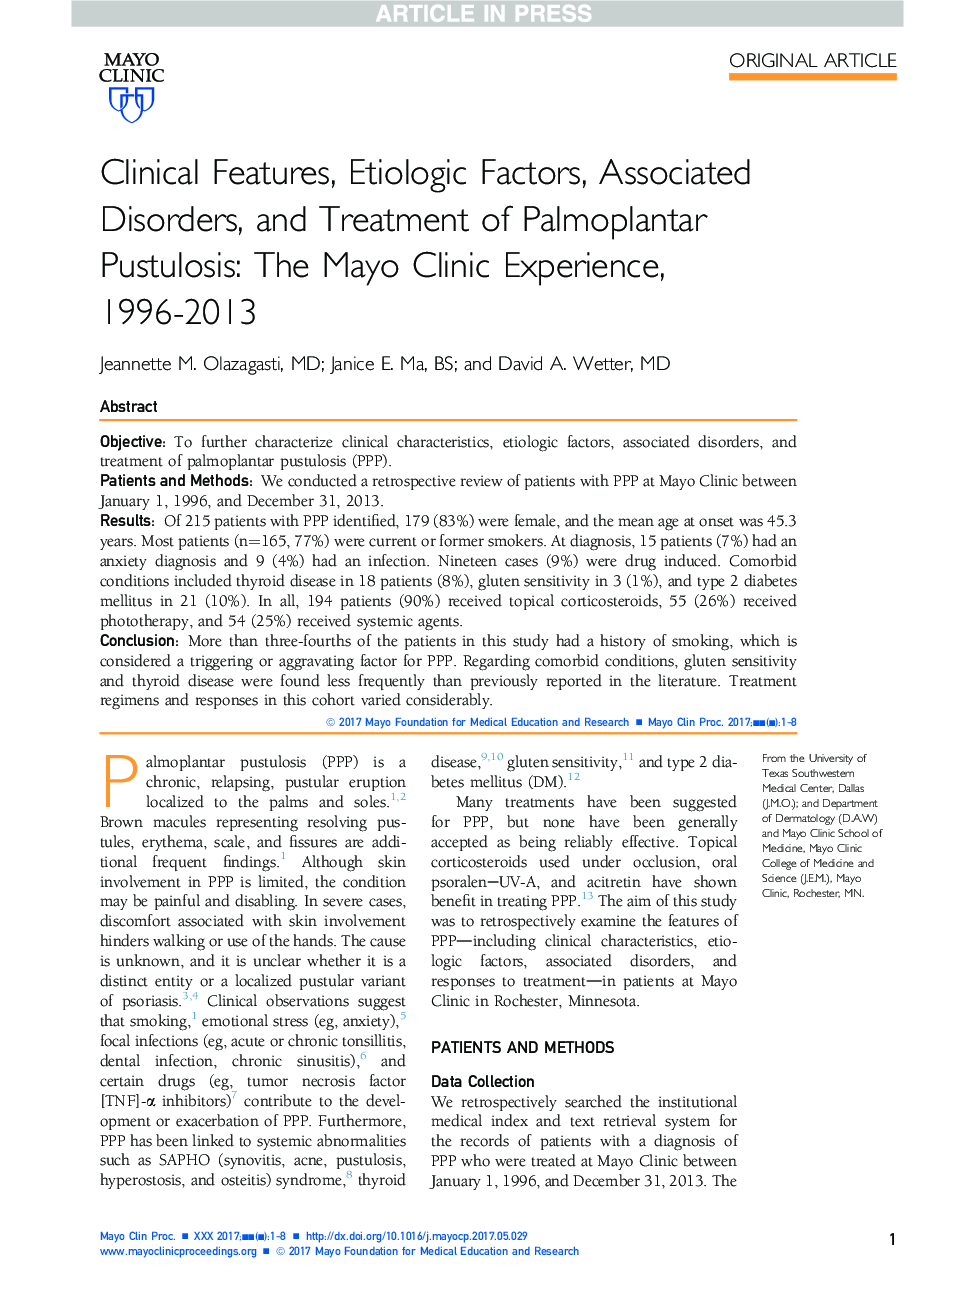 ویژگی های بالینی، عوامل بیماری شناختی، اختلالات مرتبط و درمان پاستولوز پالپوپلانتار 